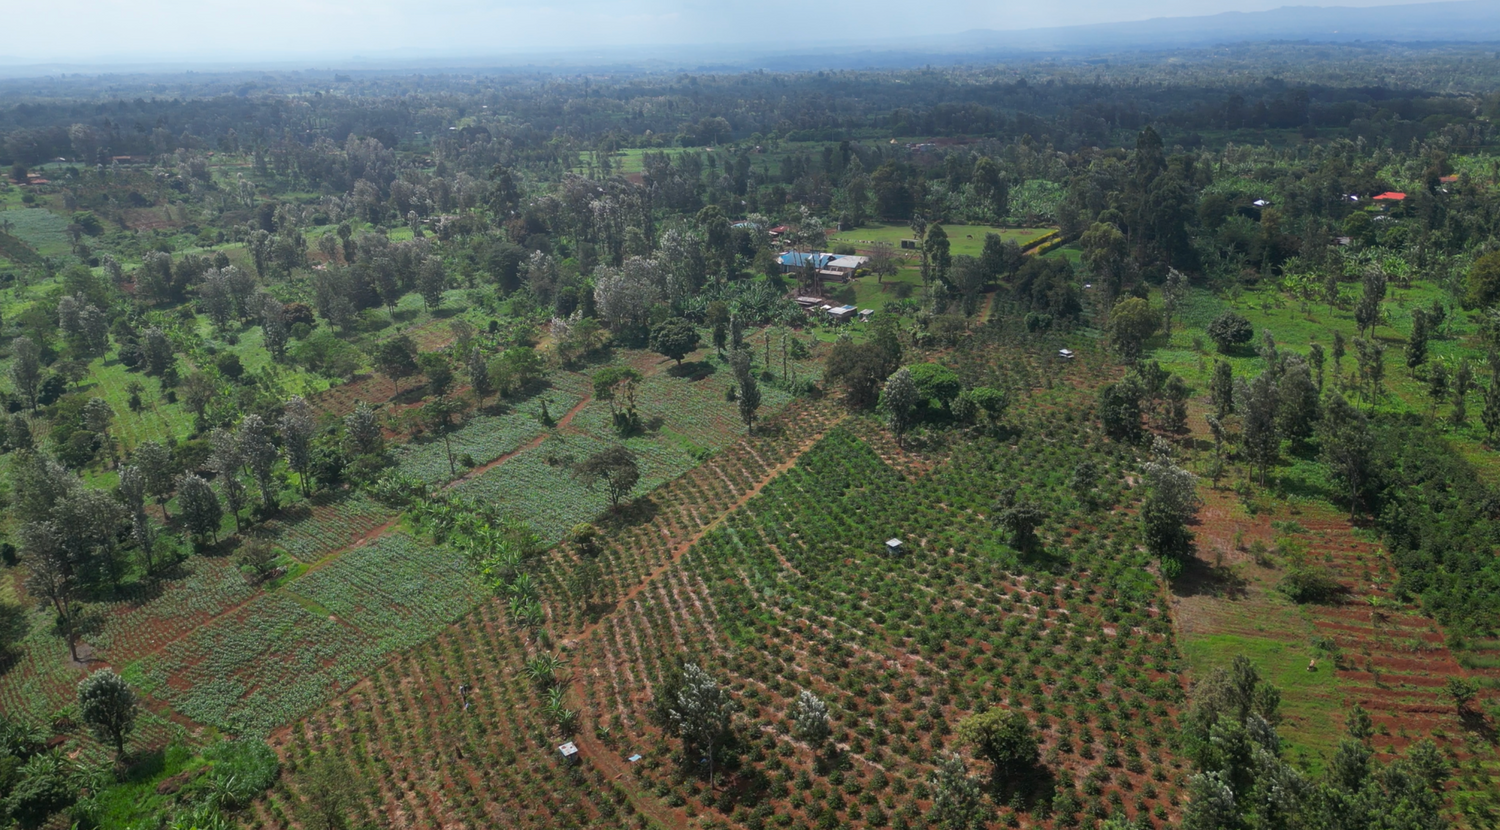 The Coffee Board Farm in Kenia